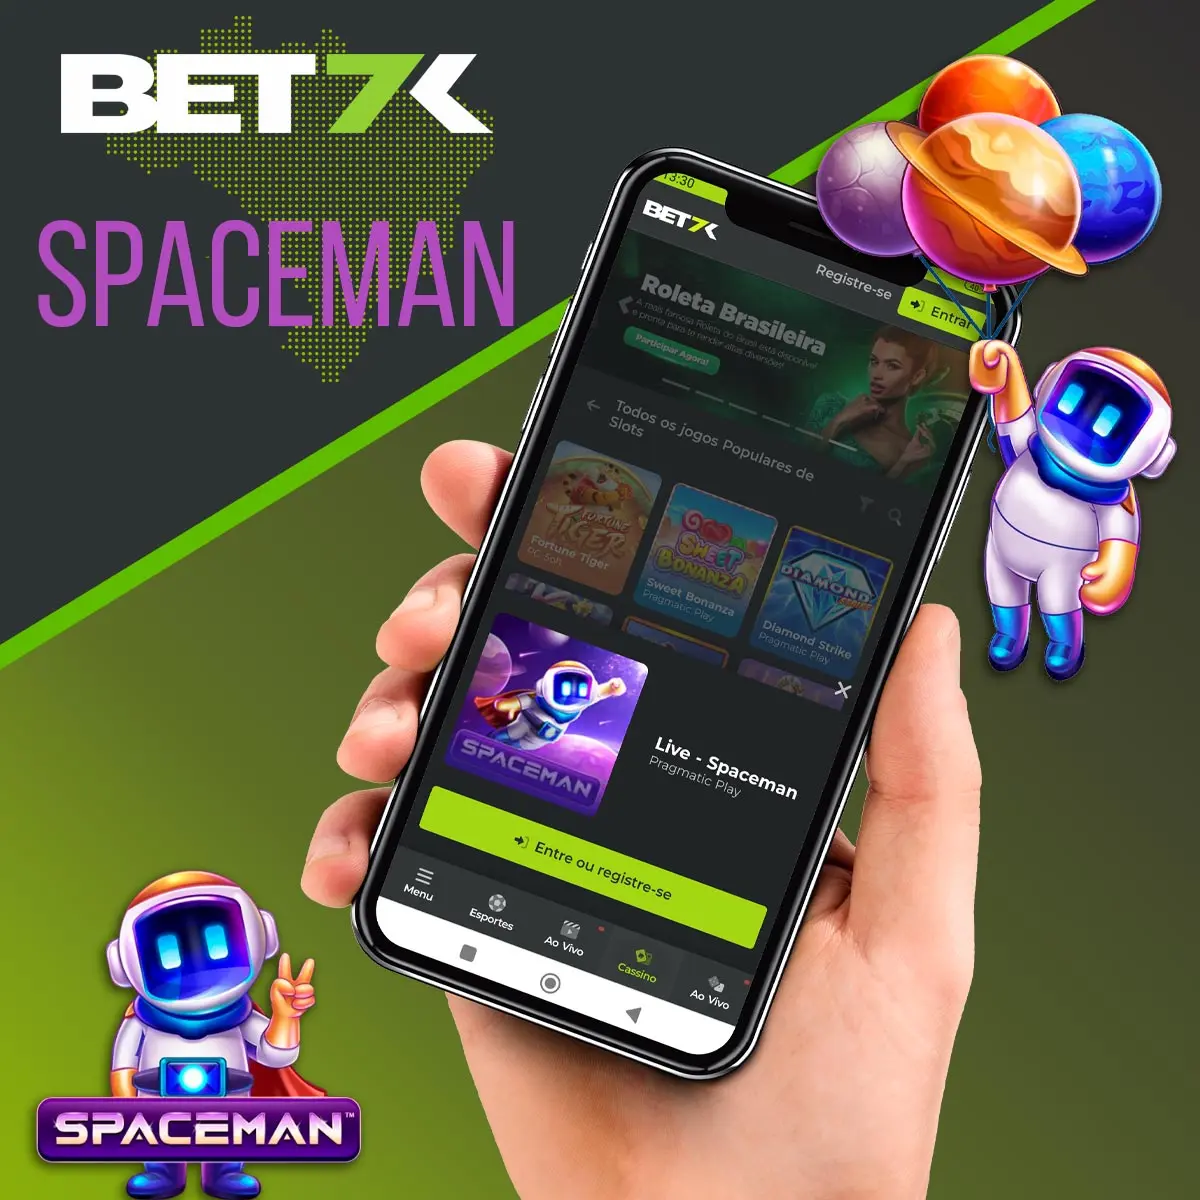 O popular jogo Spaceman no Cassino Bet7k no Brasil